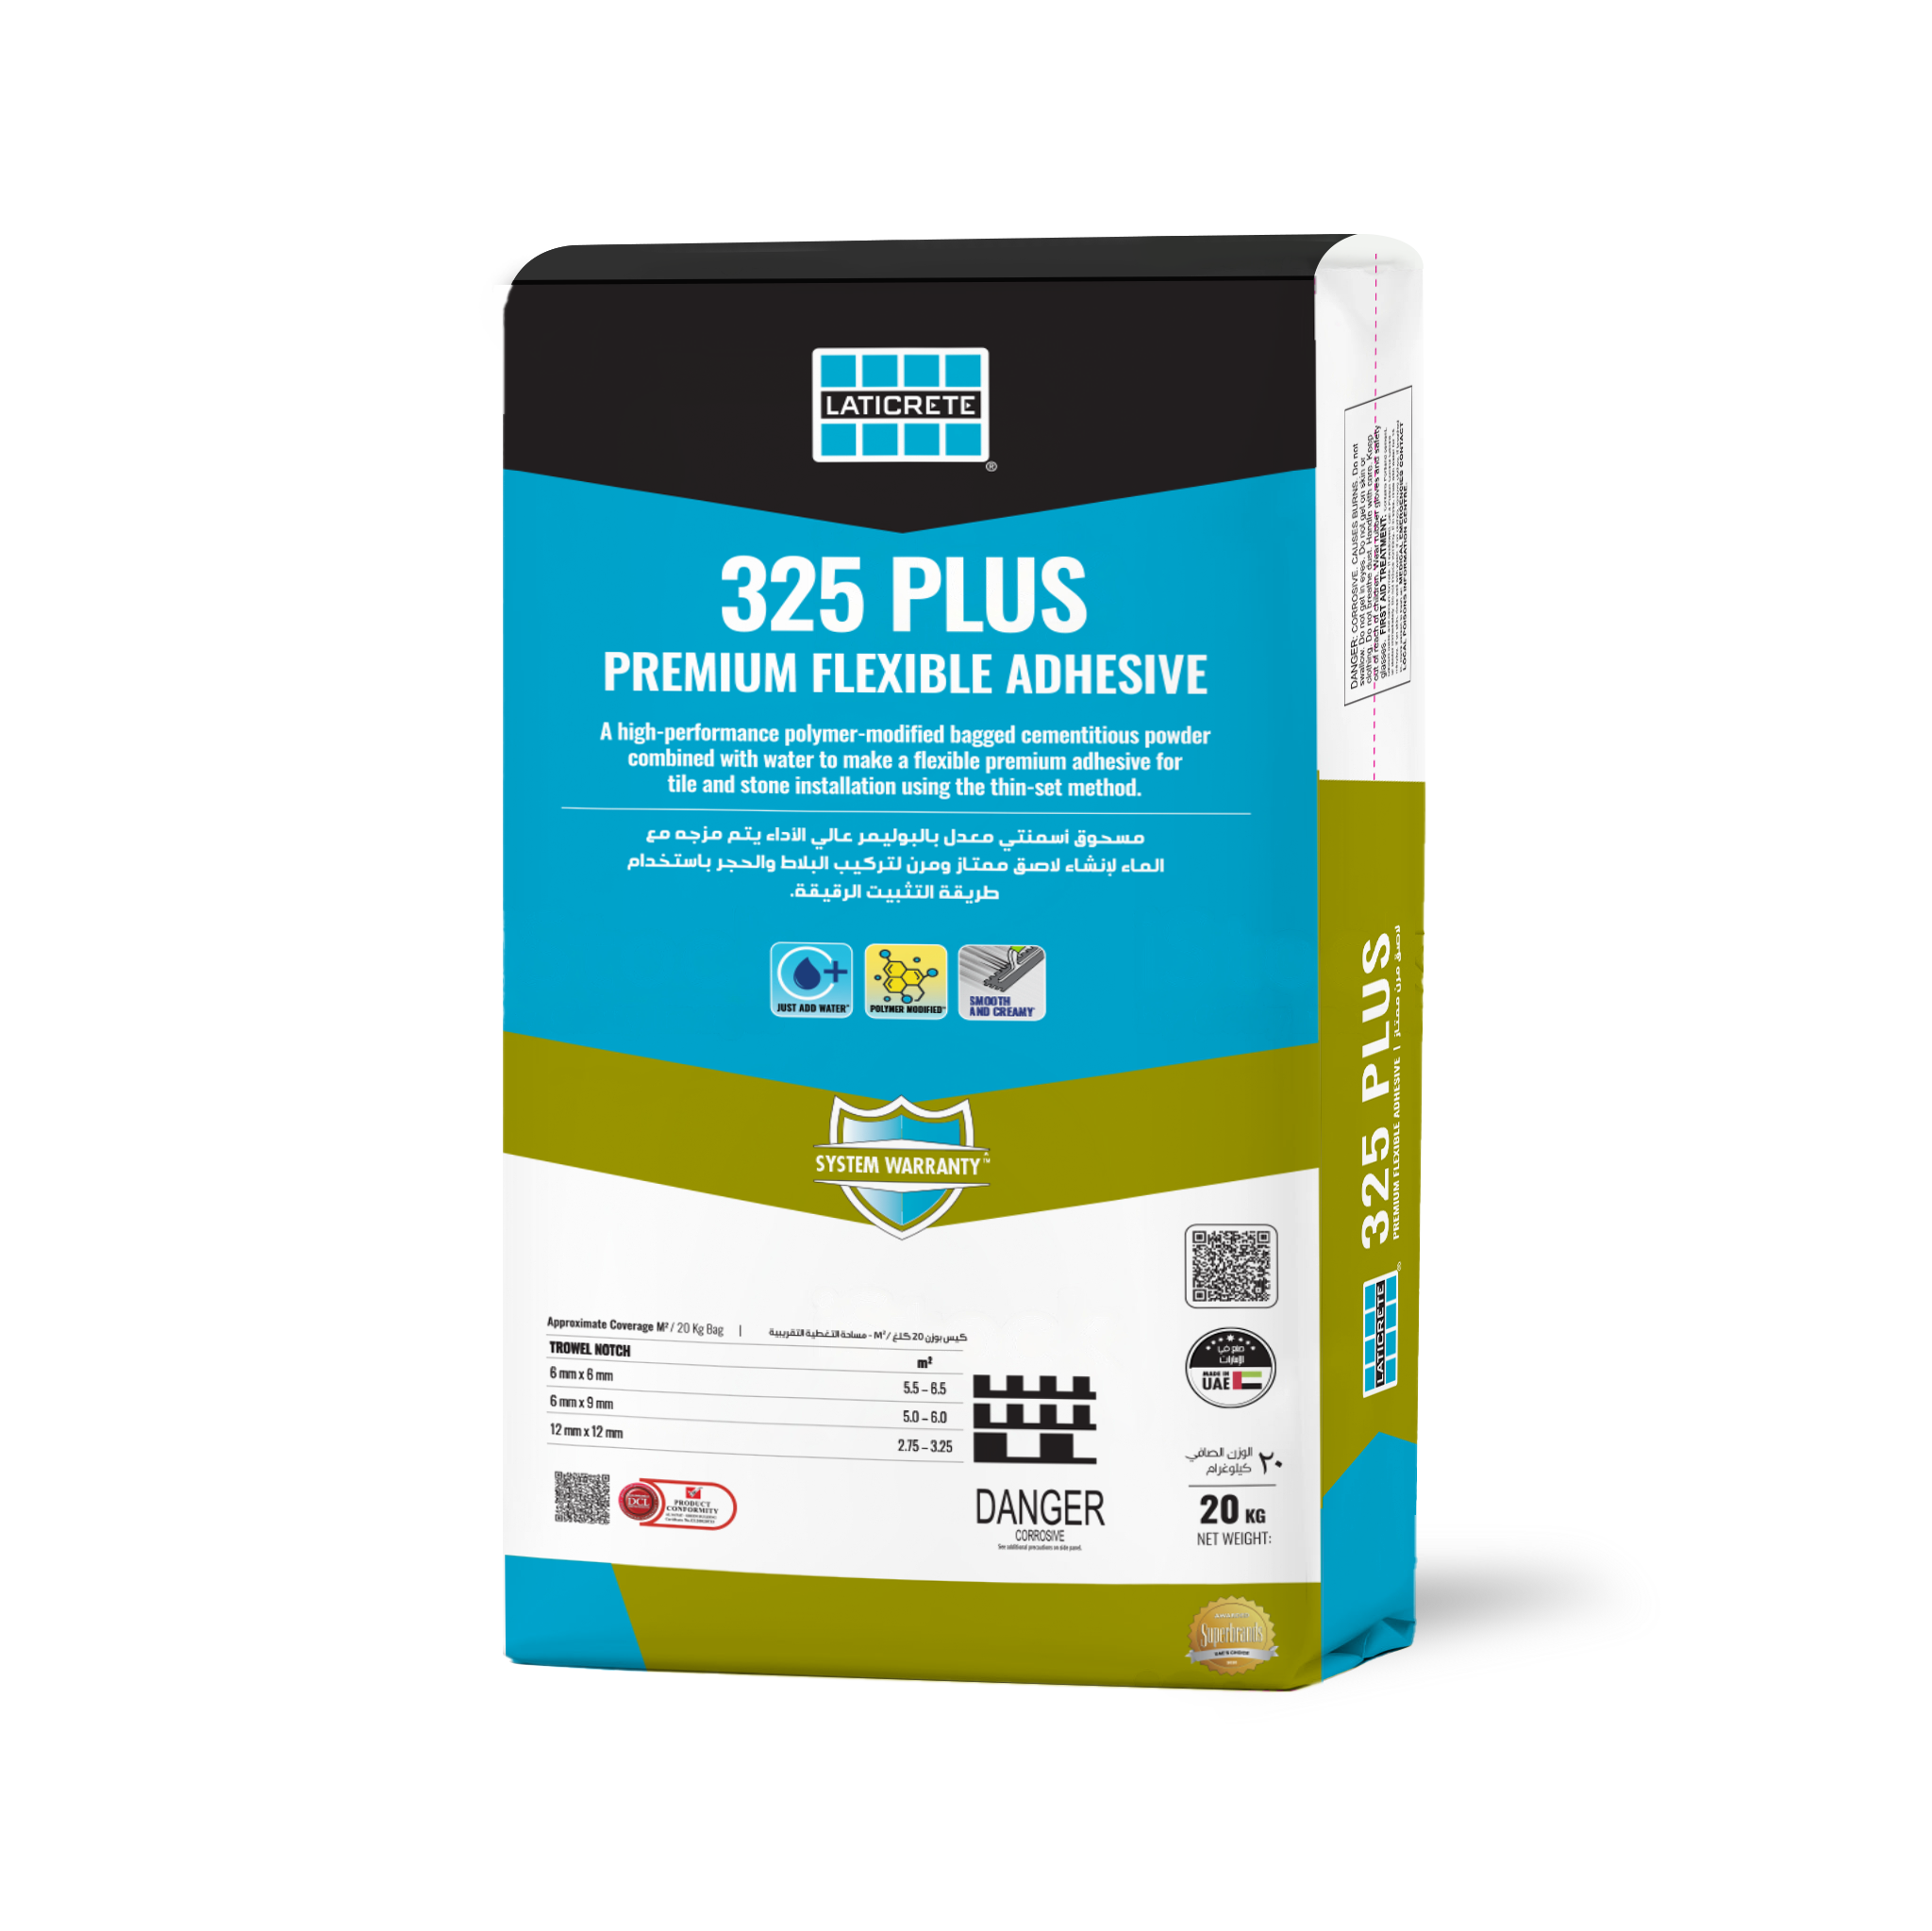 325 Plus Premium Flexible Adhesive